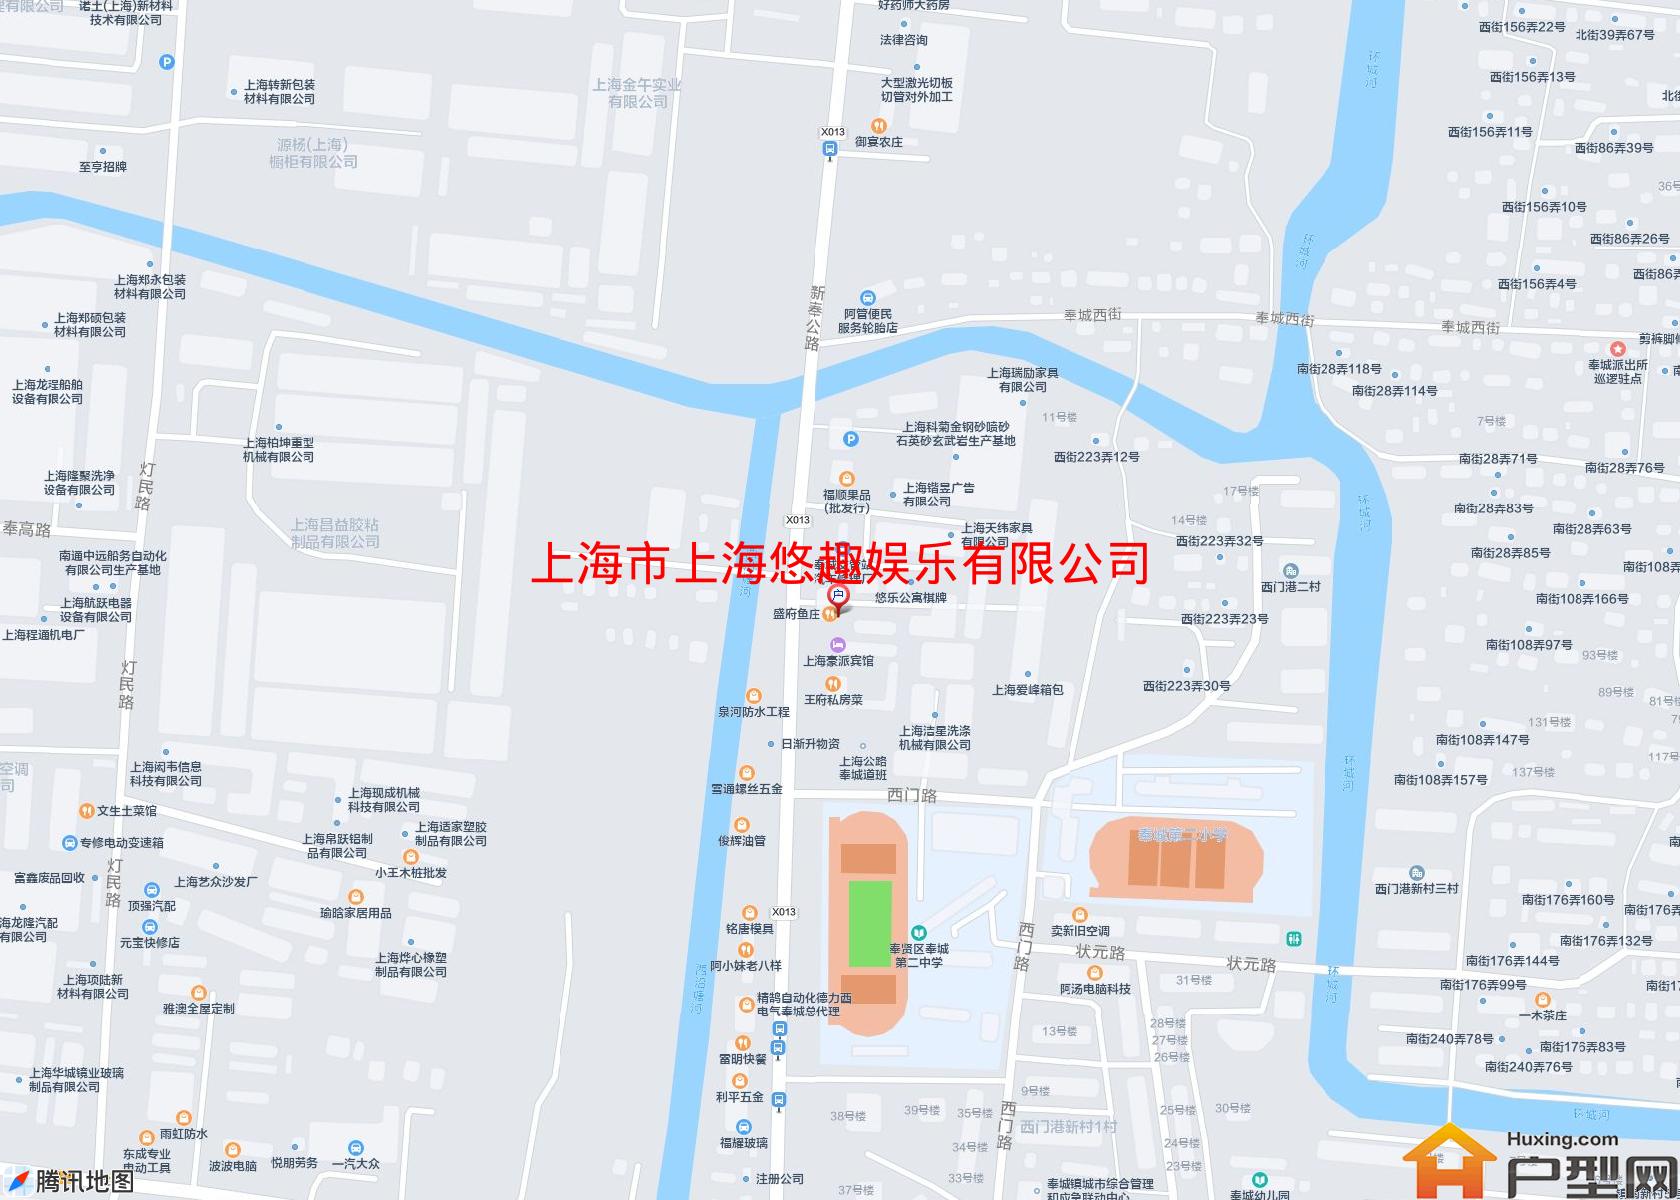 上海悠趣娱乐有限公司办公楼小区 - 户型网